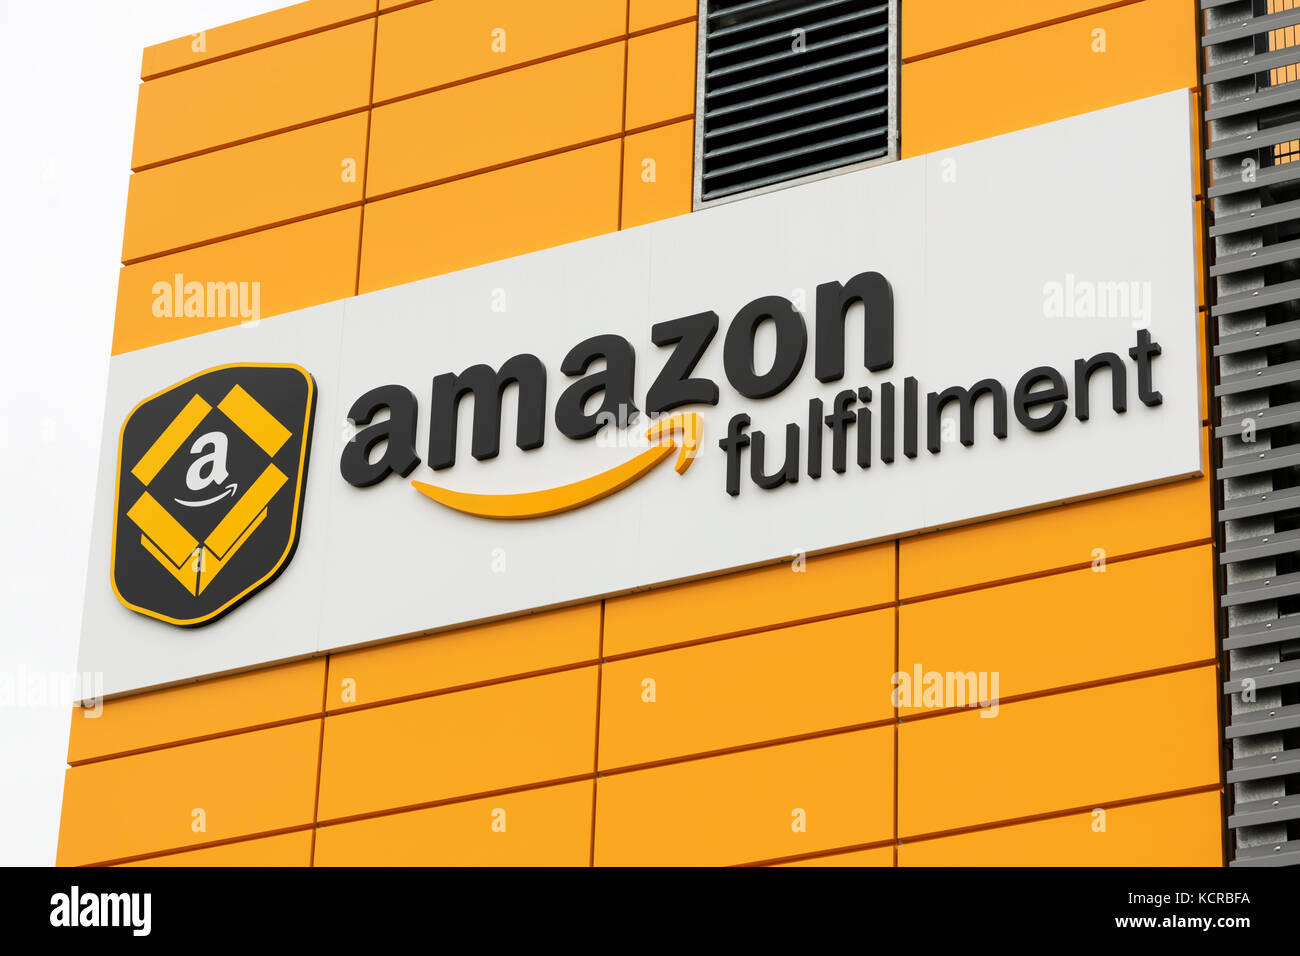 Die Beschilderung für ein Amazon Fulfillment Center in der Nähe von Manchester Airport (nur redaktionelle Nutzung). Stockfoto